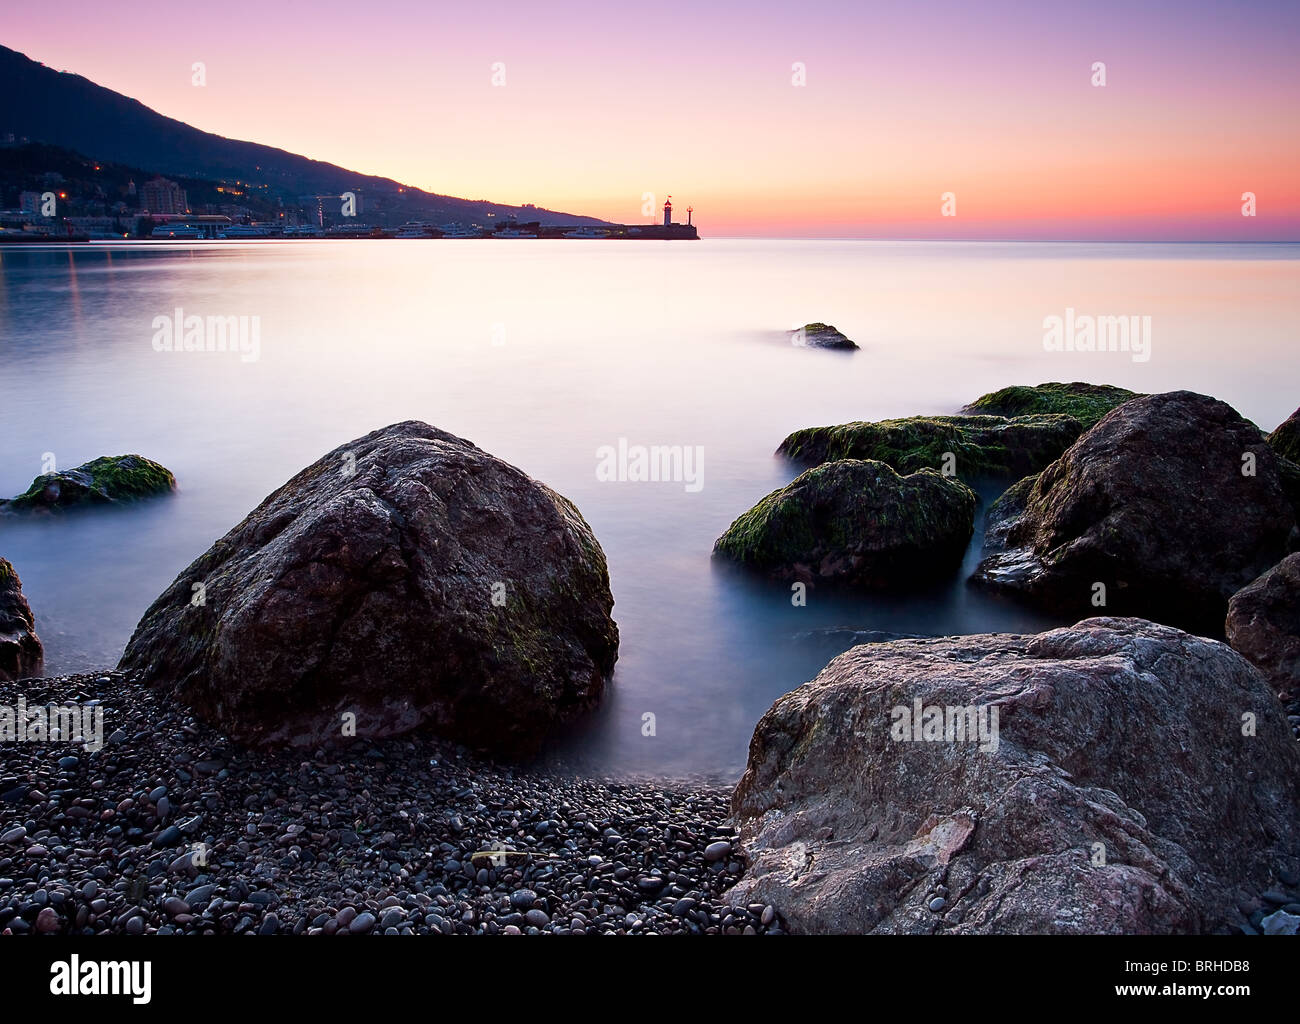 Beautiful sunrise over the sea. Crimea, Ulraine Stock Photo